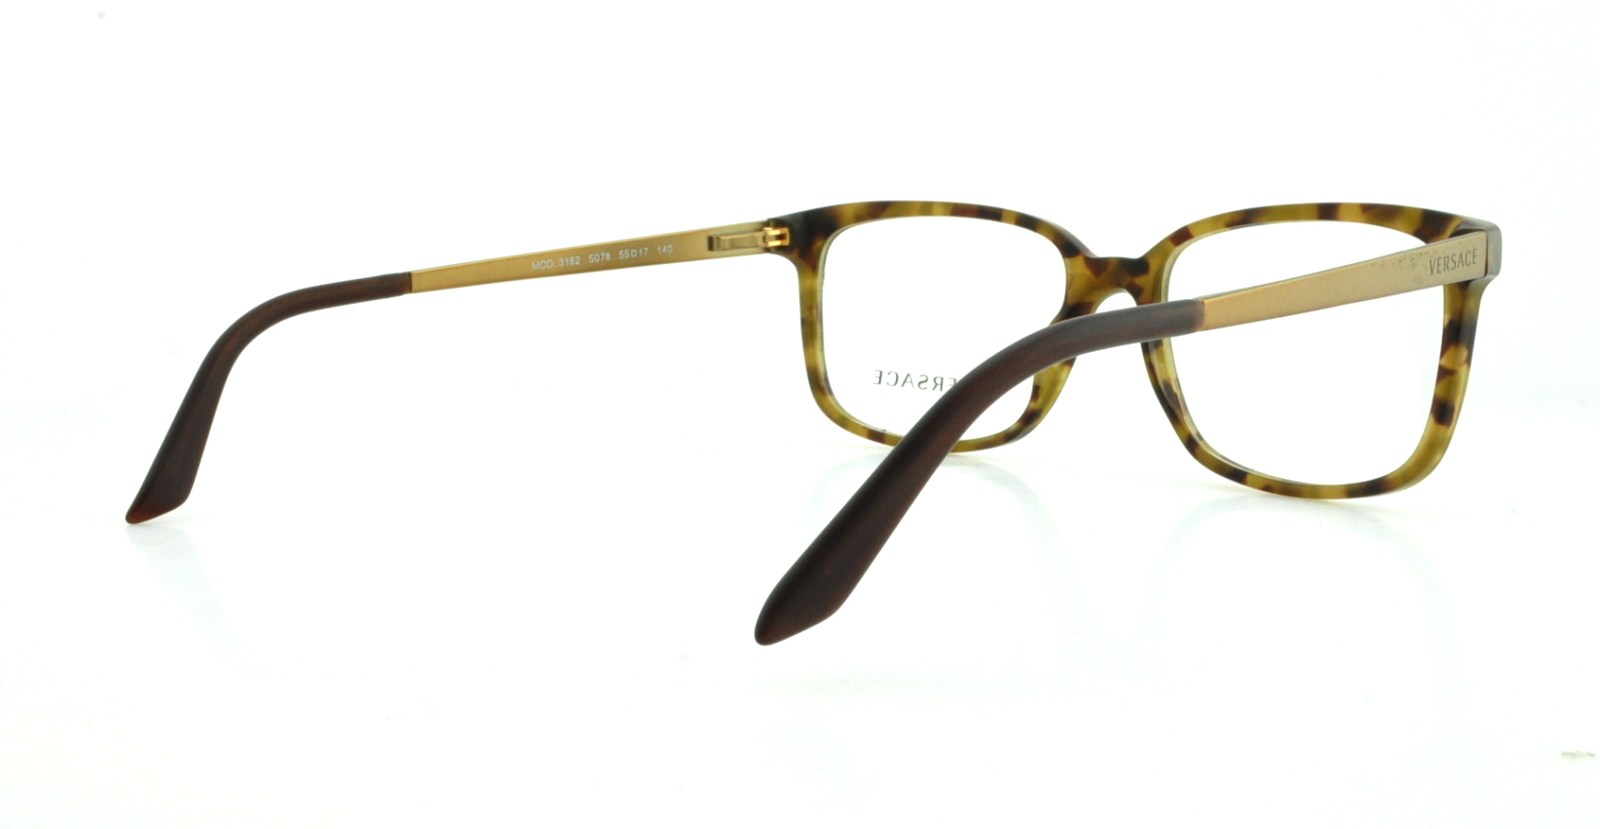 Designer Frames Outlet. Versace Eyeglasses VE3182